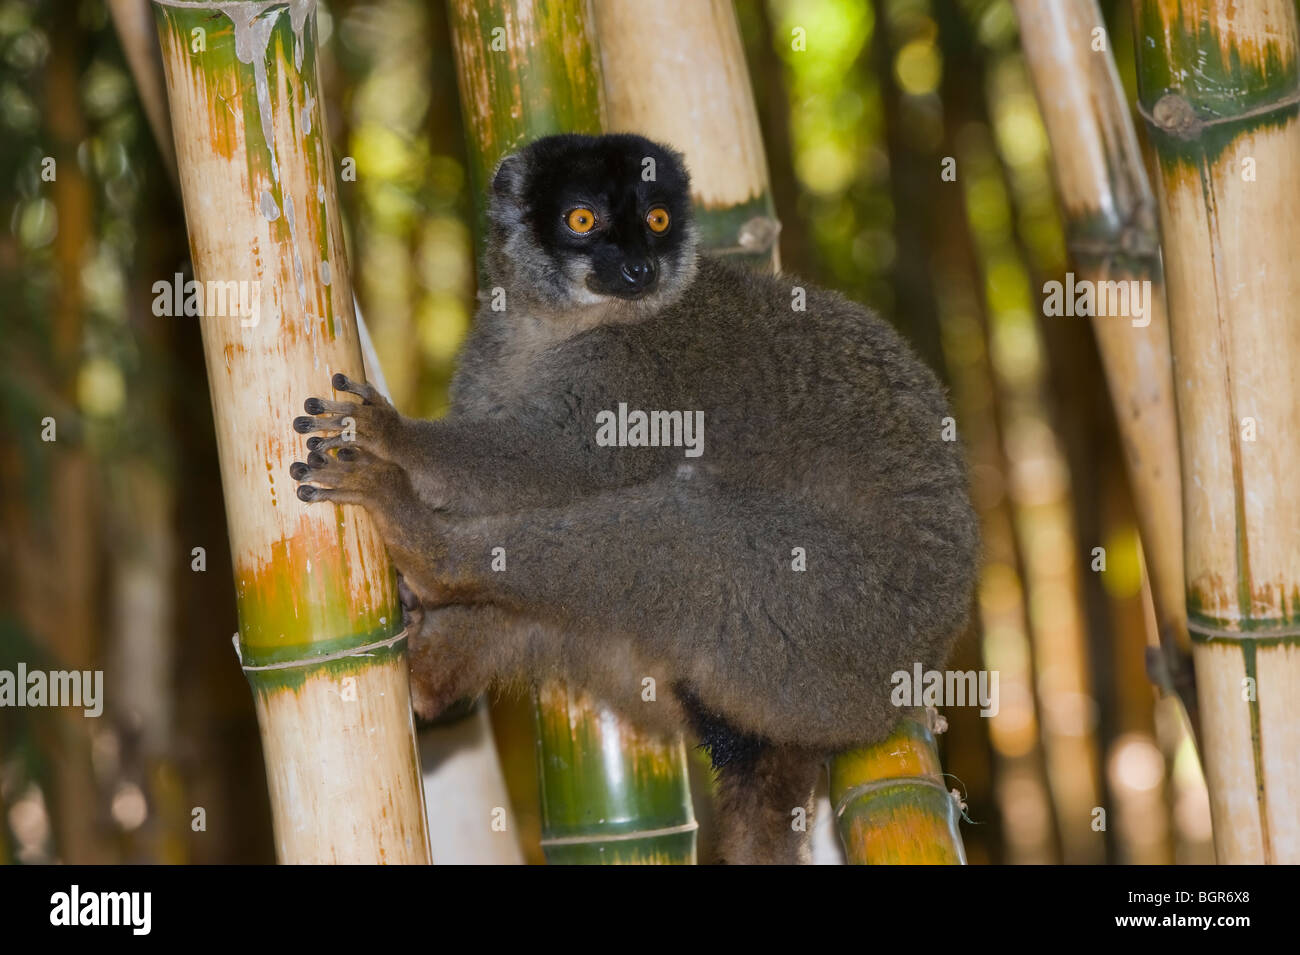 Common Brown Lemur (Eulemur fulvus), Madagascar Stock Photo